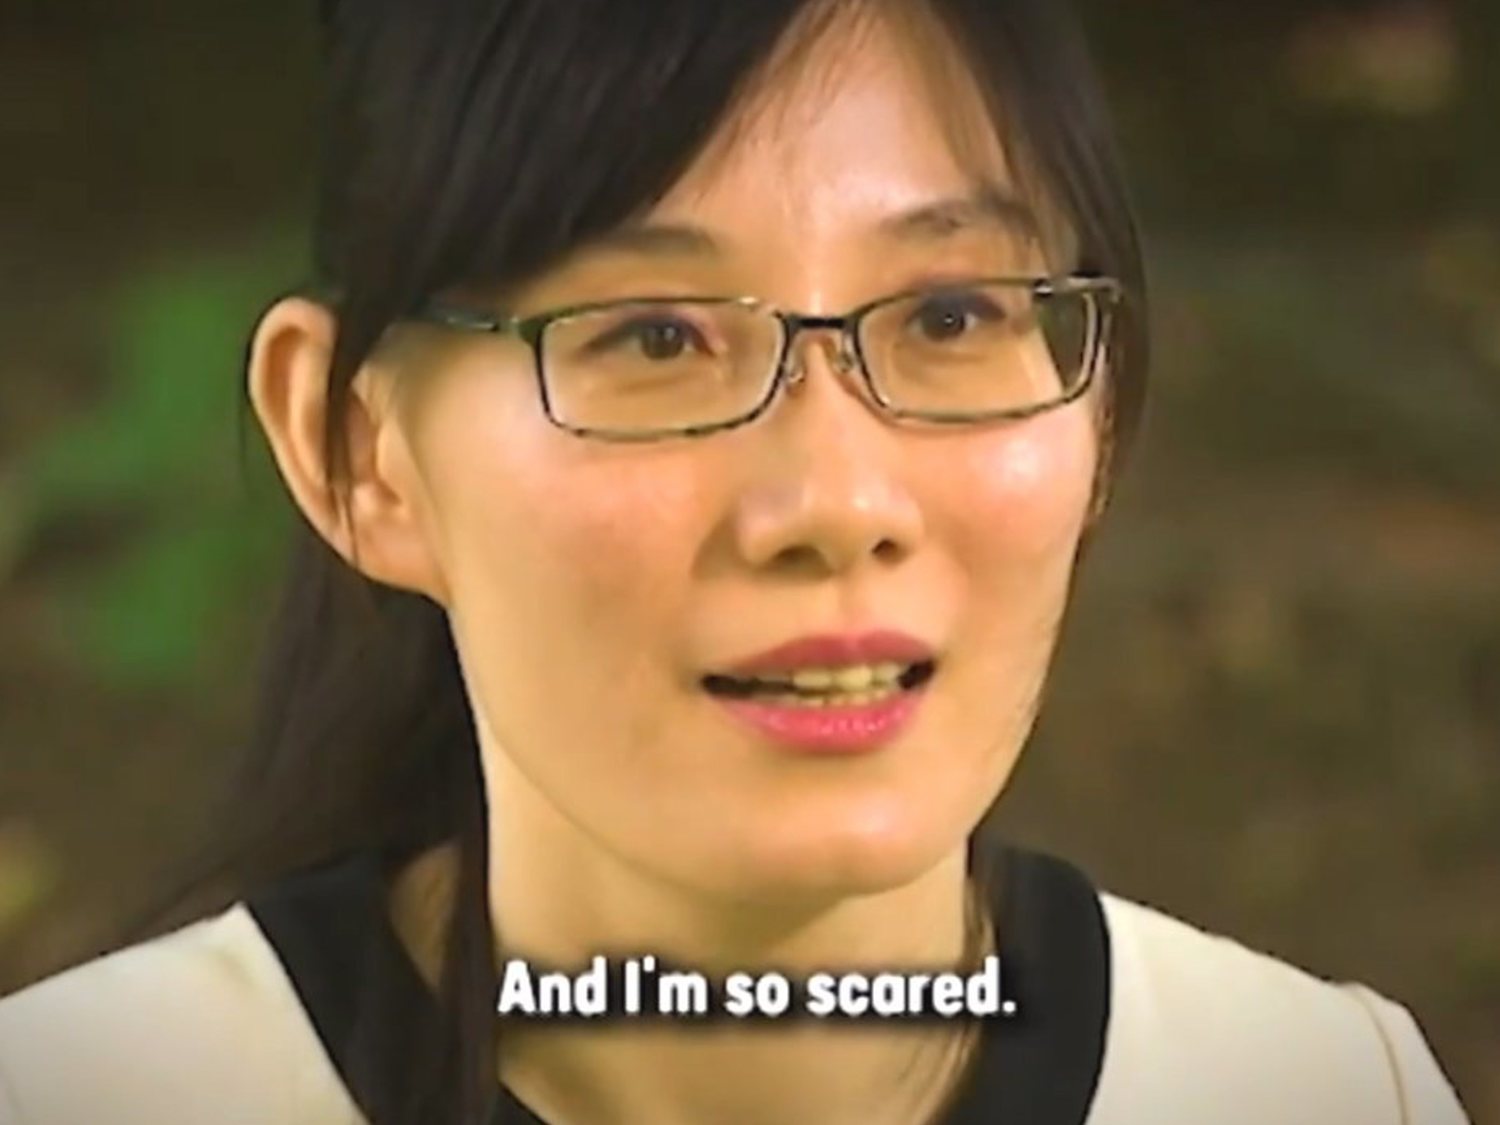 Una viróloga que escapó de China: "Ocultaron el coronavirus desde antes de diciembre"